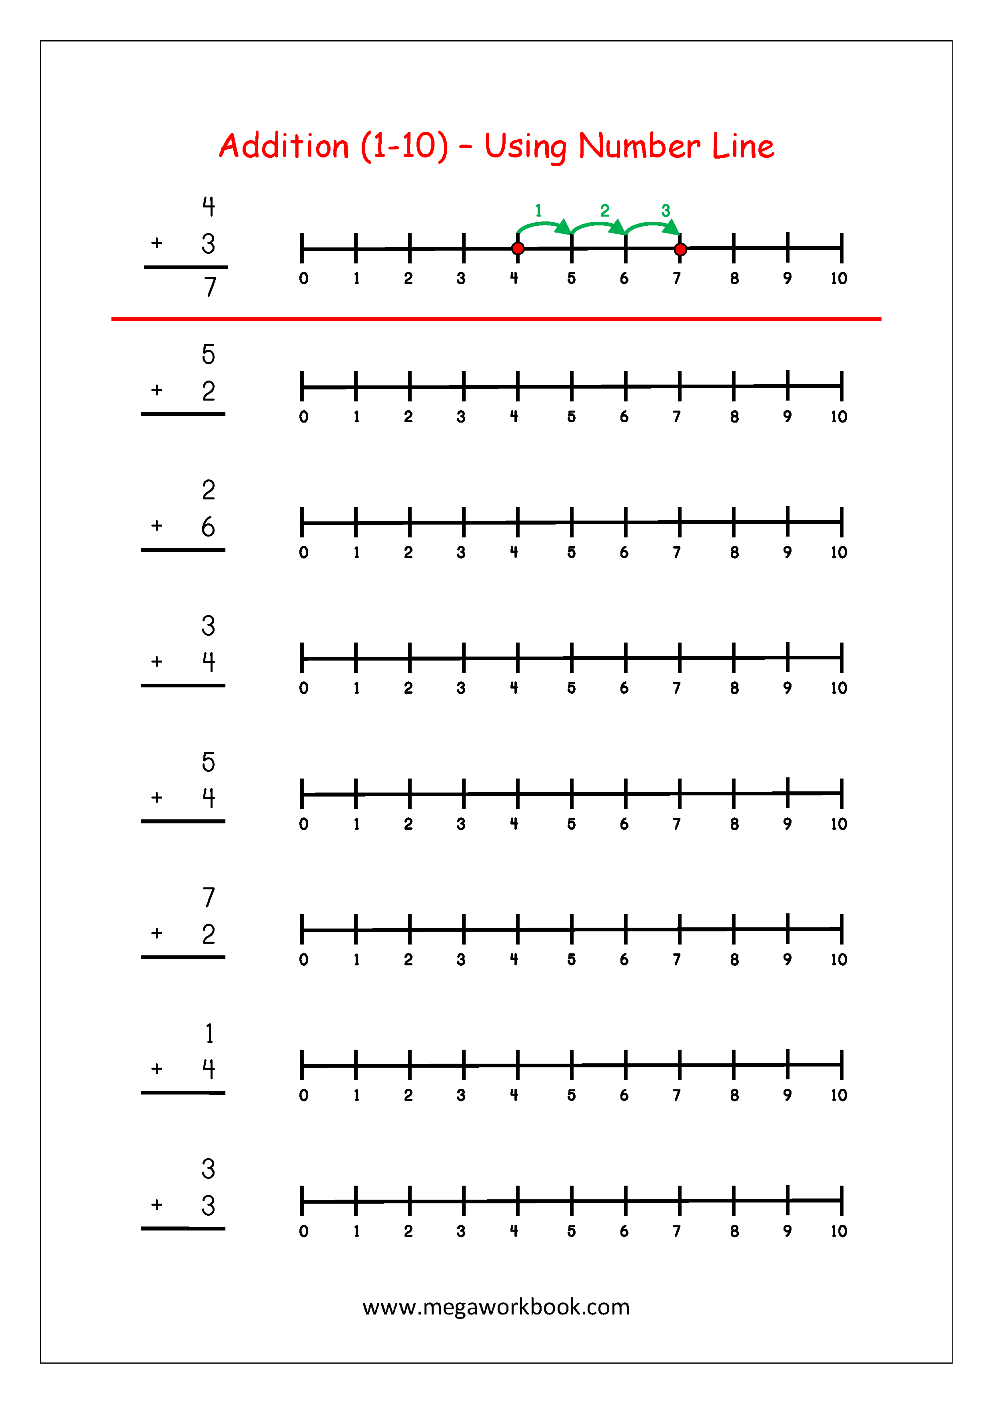 Free Printable Number Addition Worksheets (11-111) For Kindergarten Throughout Blank Number Line Worksheet